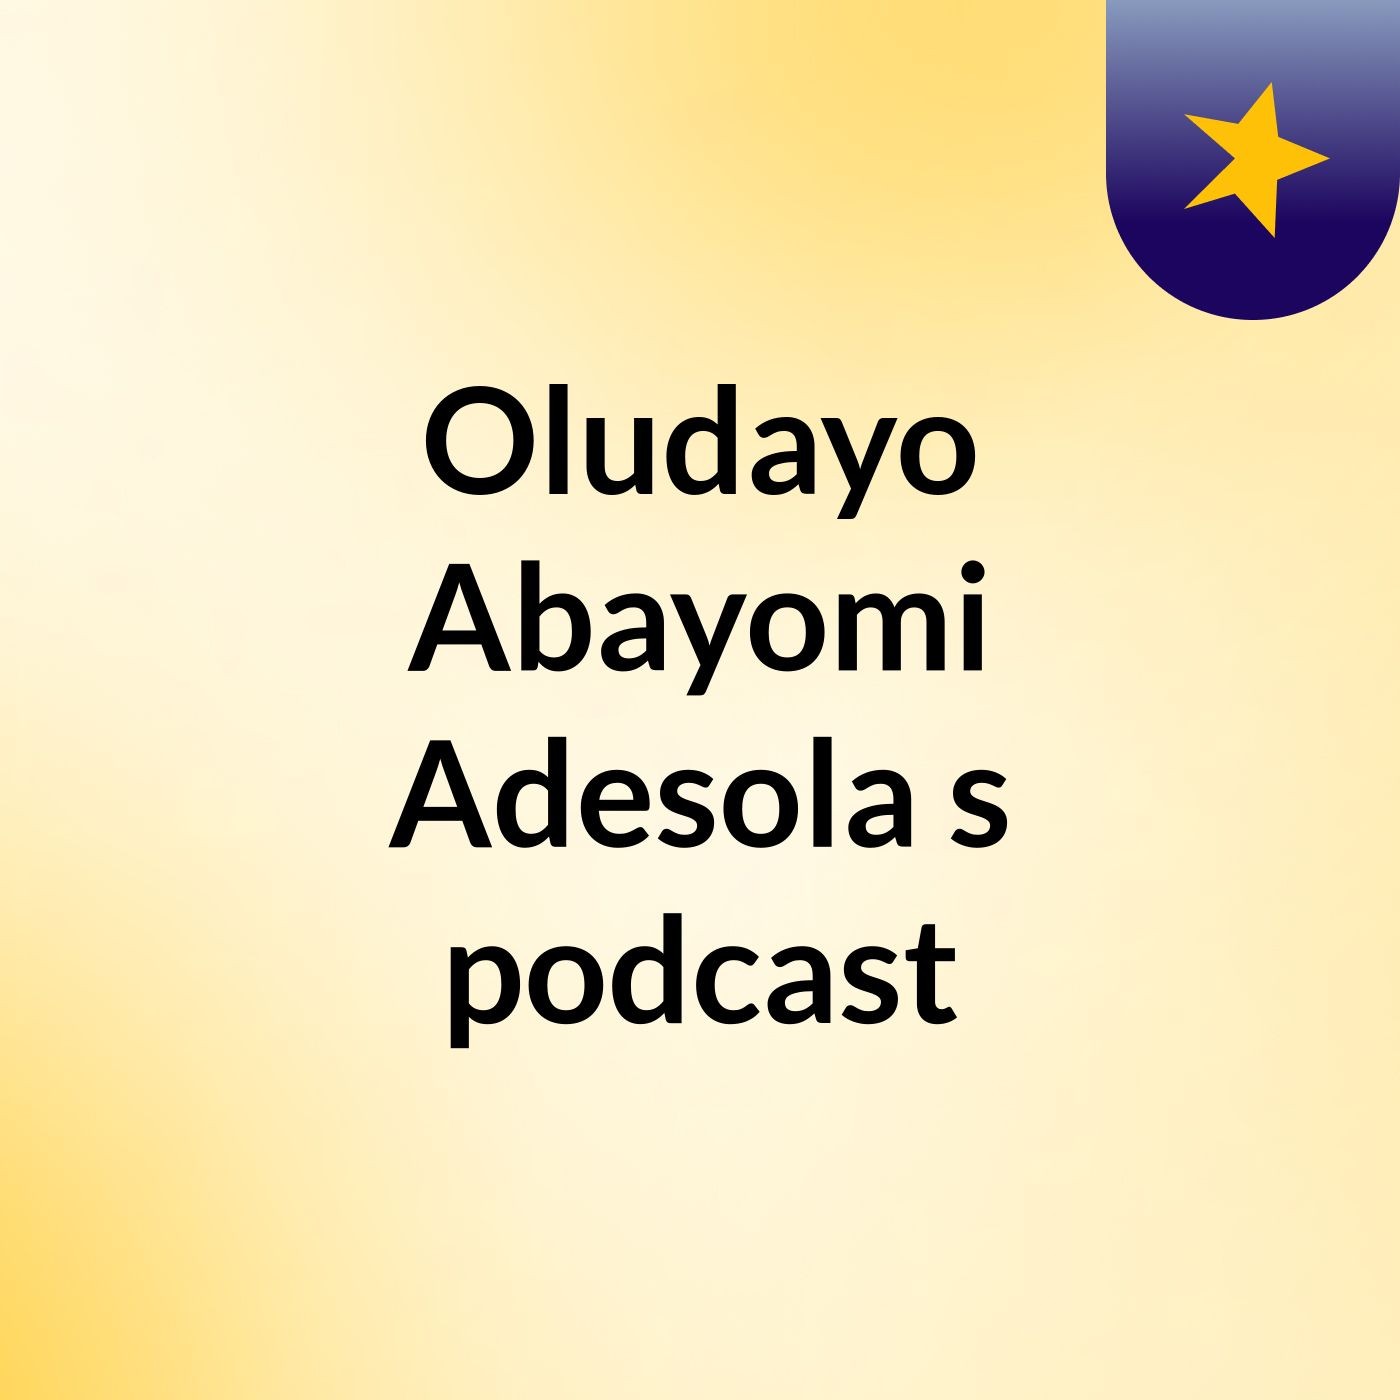 Episode 2 - Oludayo Abayomi Adesola's podcast